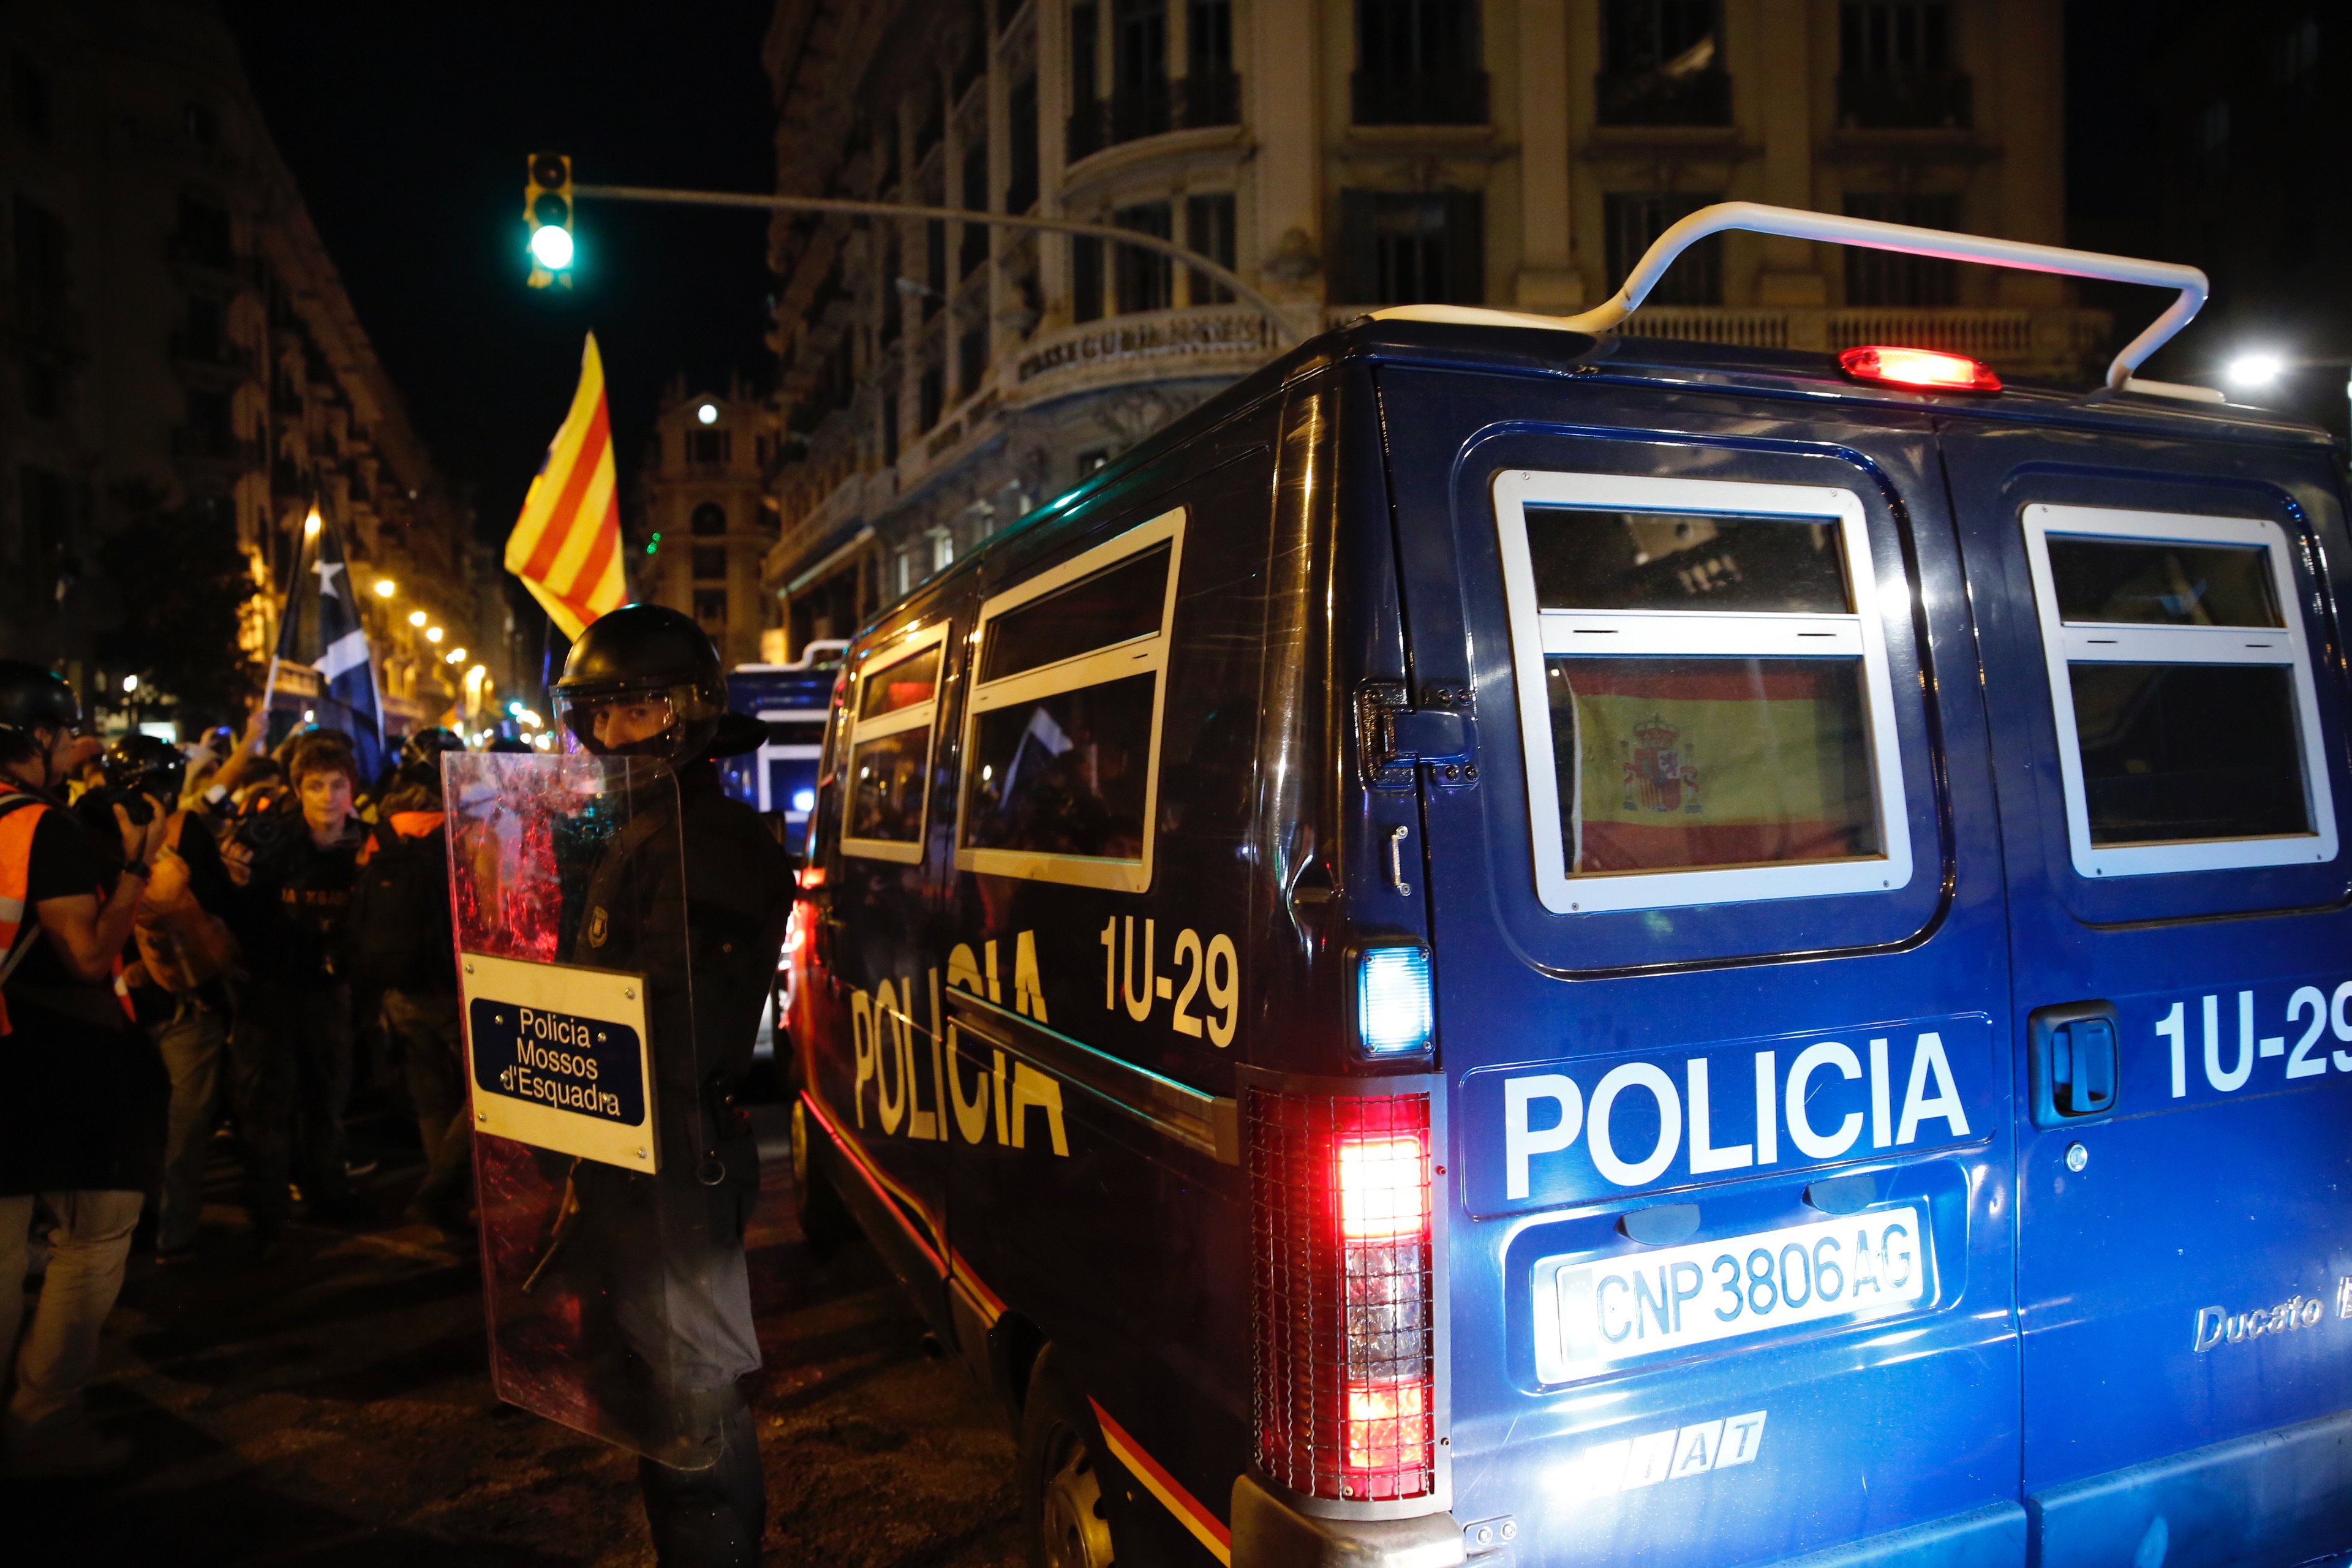 El Ministerio del Interior refuerza el dispositivo policial por la visita del Rey a Catalunya